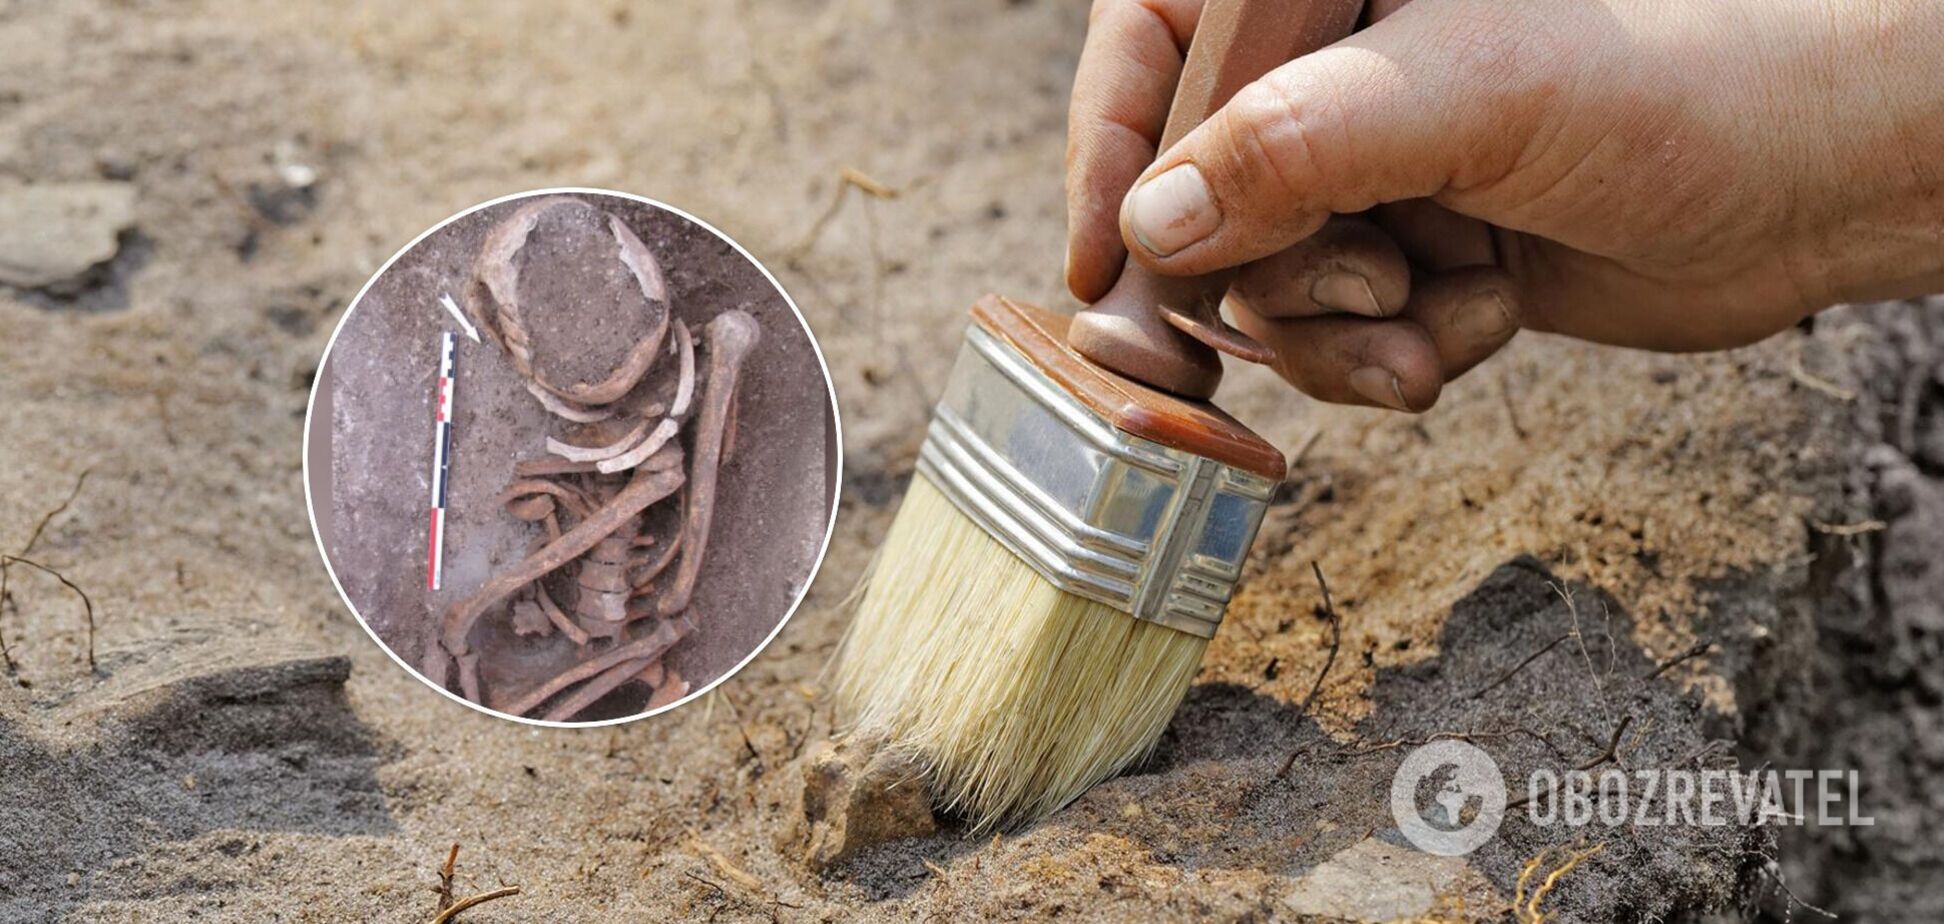 Археологів спантеличила таємниця відкриття могил древніми людьми. Фото